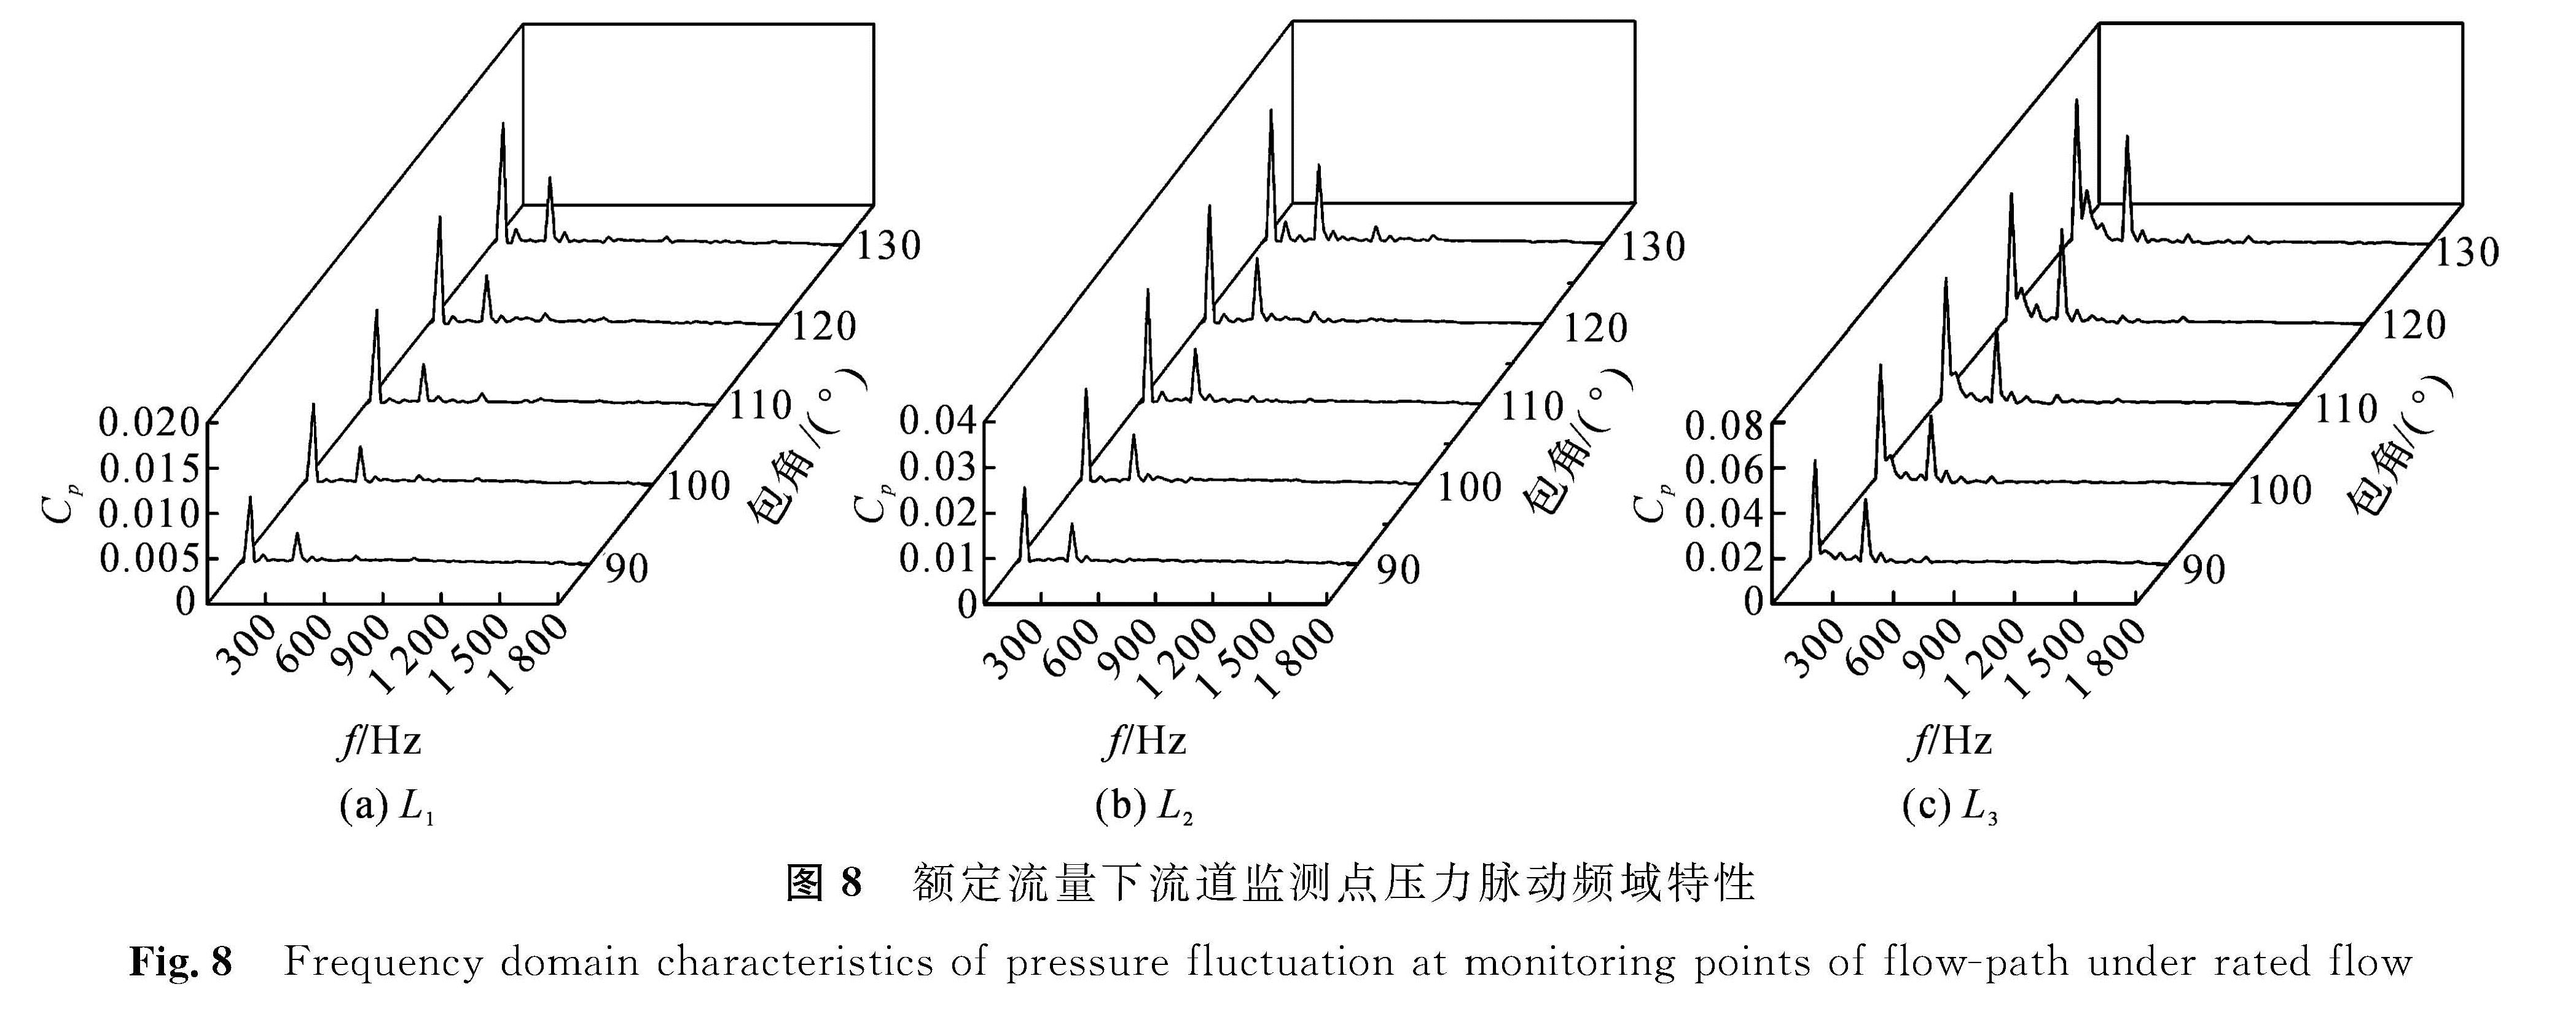 图8 额定流量下流道监测点压力脉动频域特性<br/>Fig.8 Frequency domain characteristics of pressure fluctuation at monitoring points of flow-path under rated flow